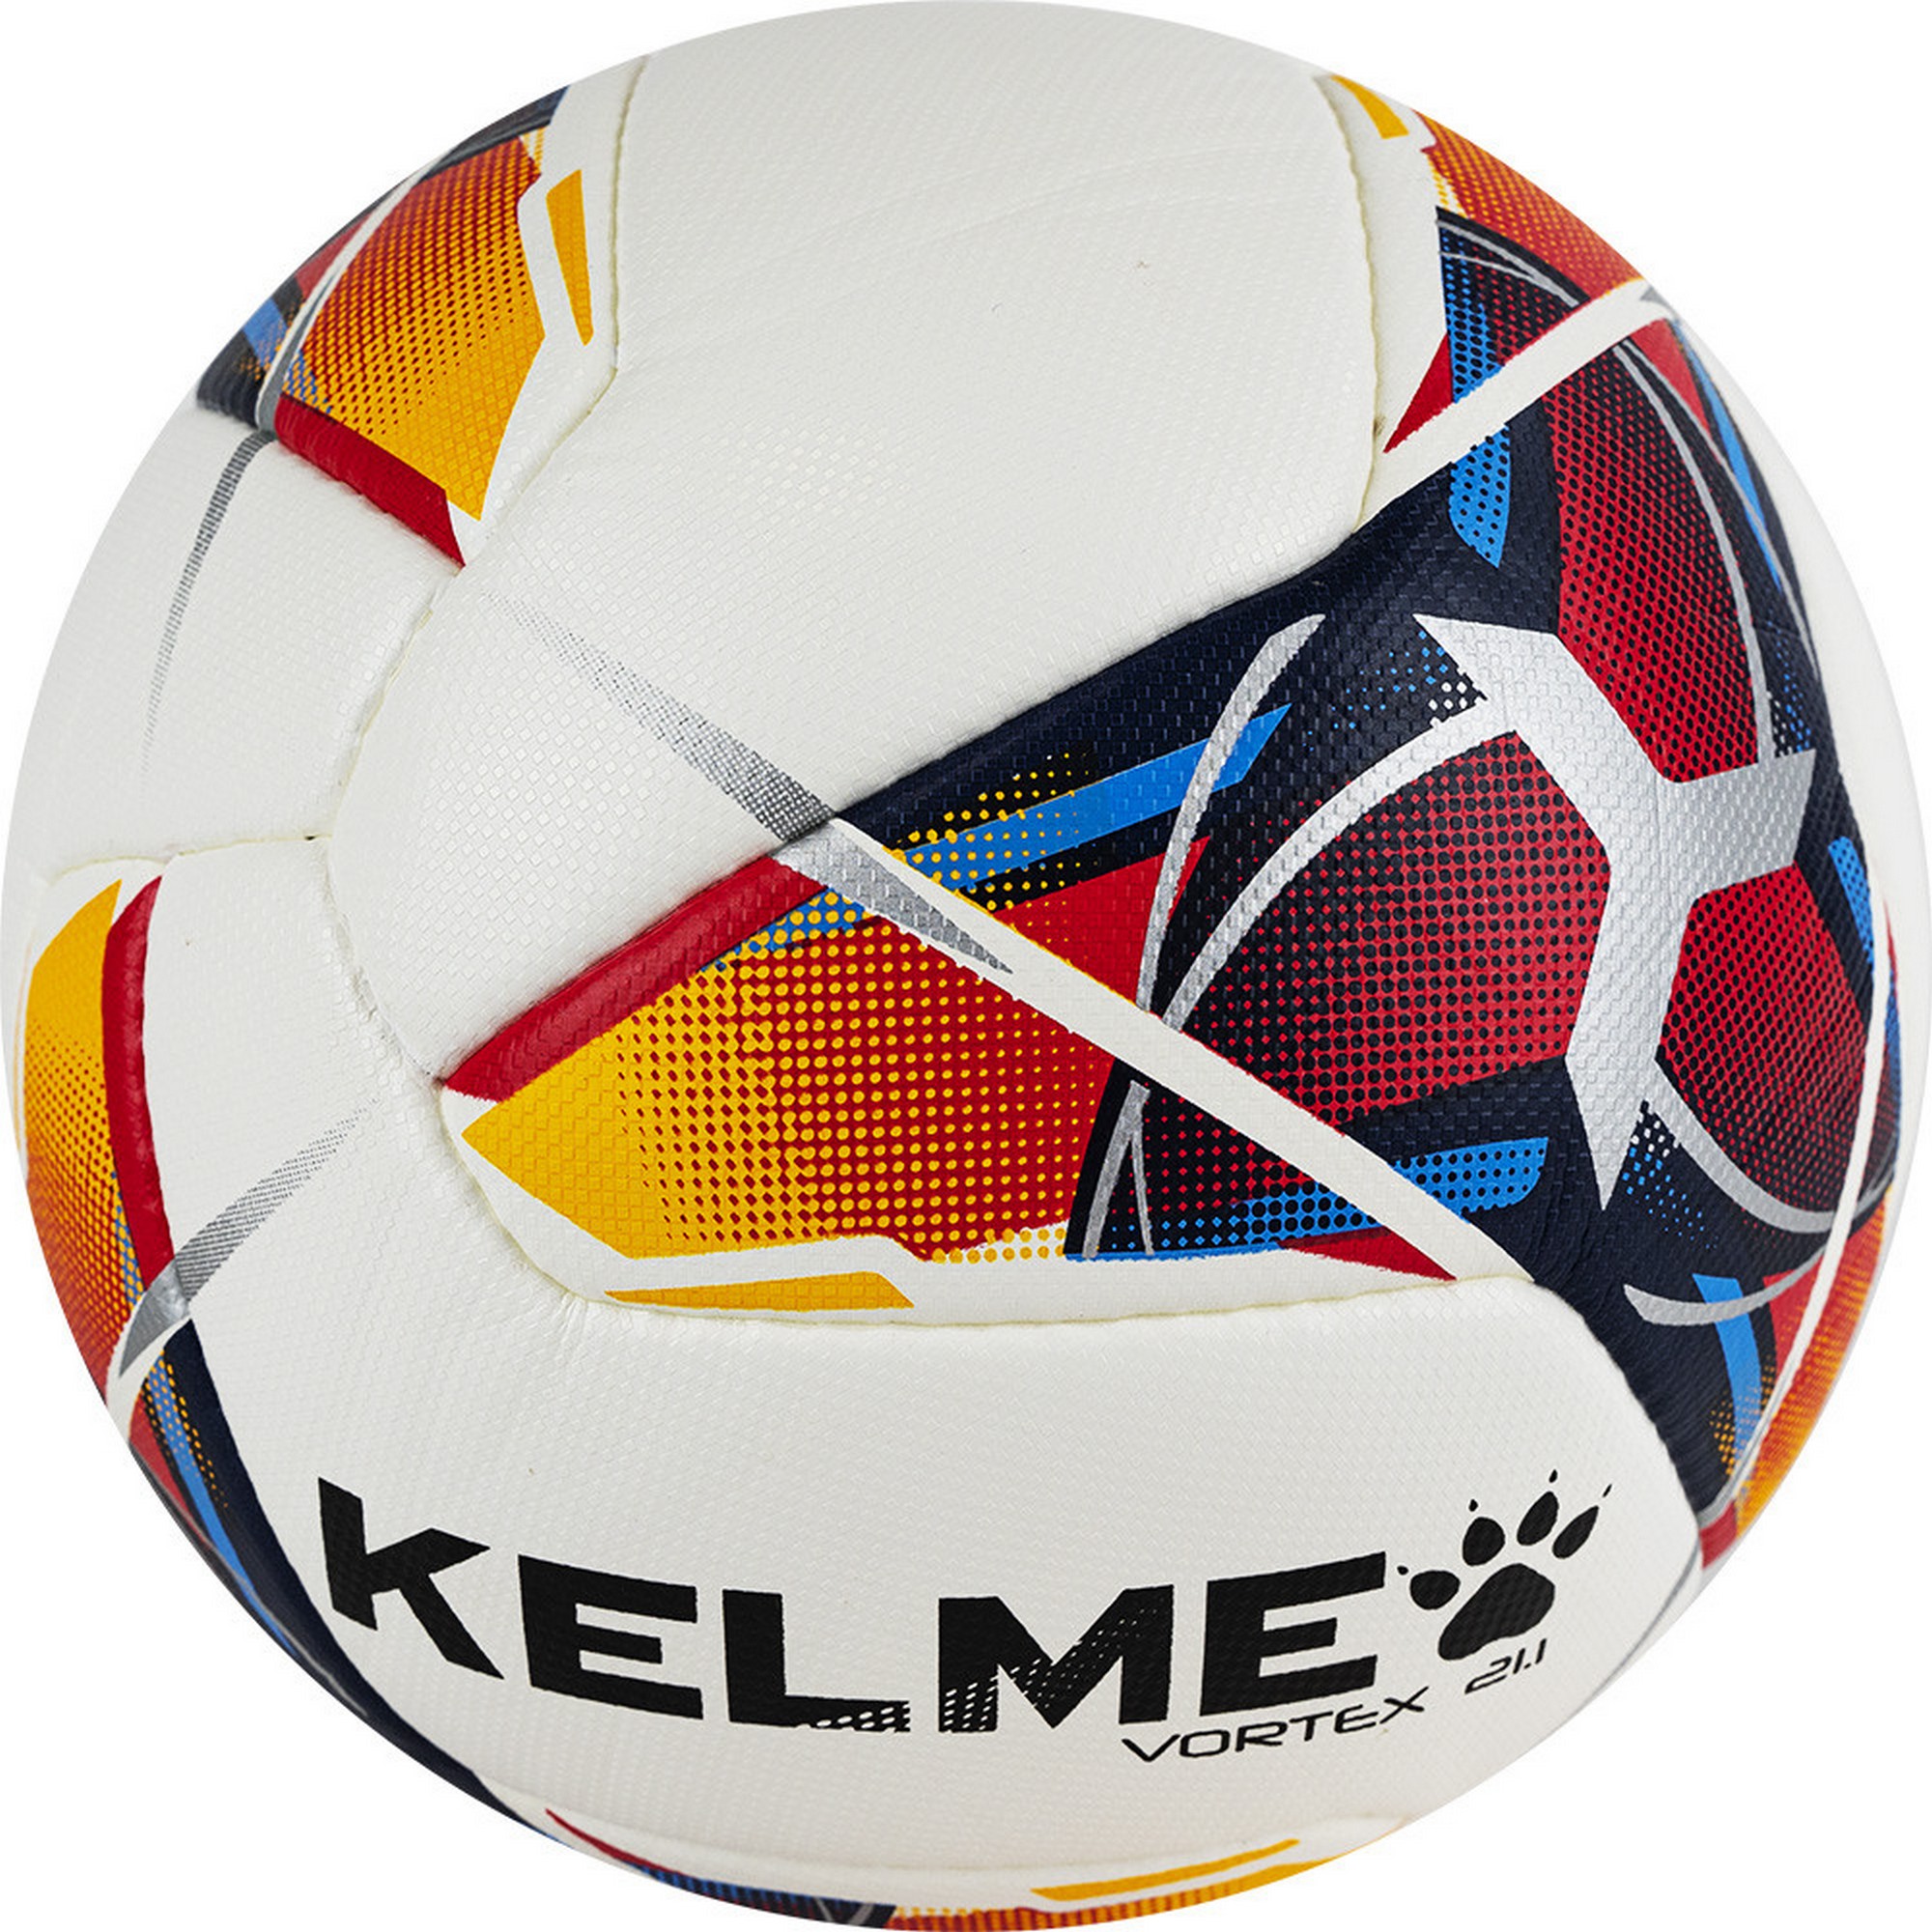 Мяч футбольный Kelme Vortex 21.1, 8101QU5003-423 р.4 2000_2000